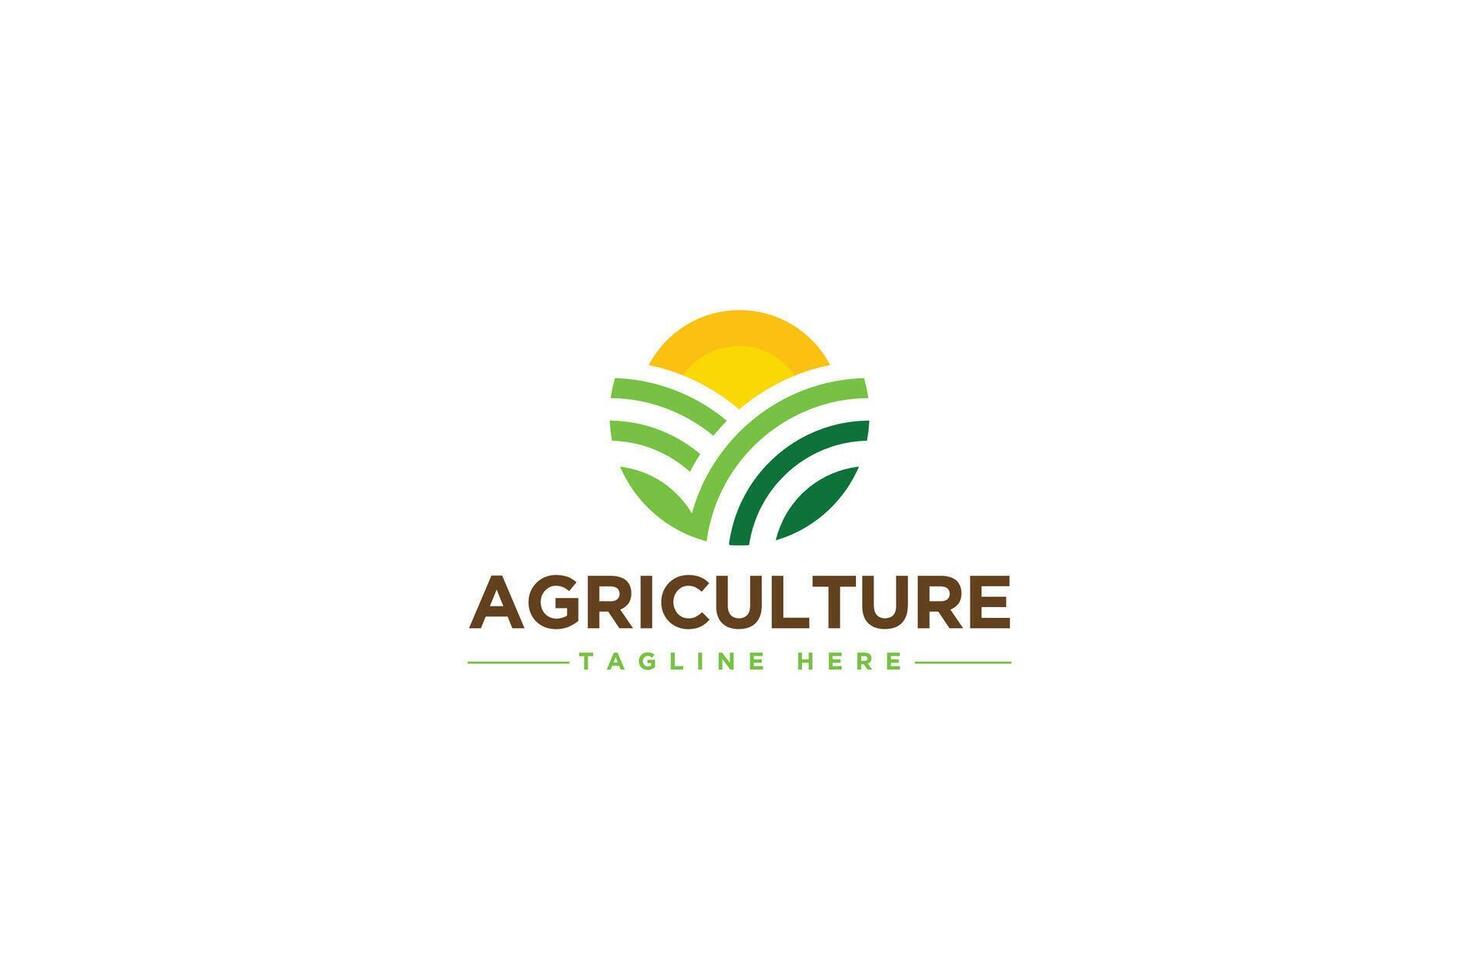 un excelente, creativo, súper minimalista agricultura logo diseño concepto para un ideal agricultor. vector